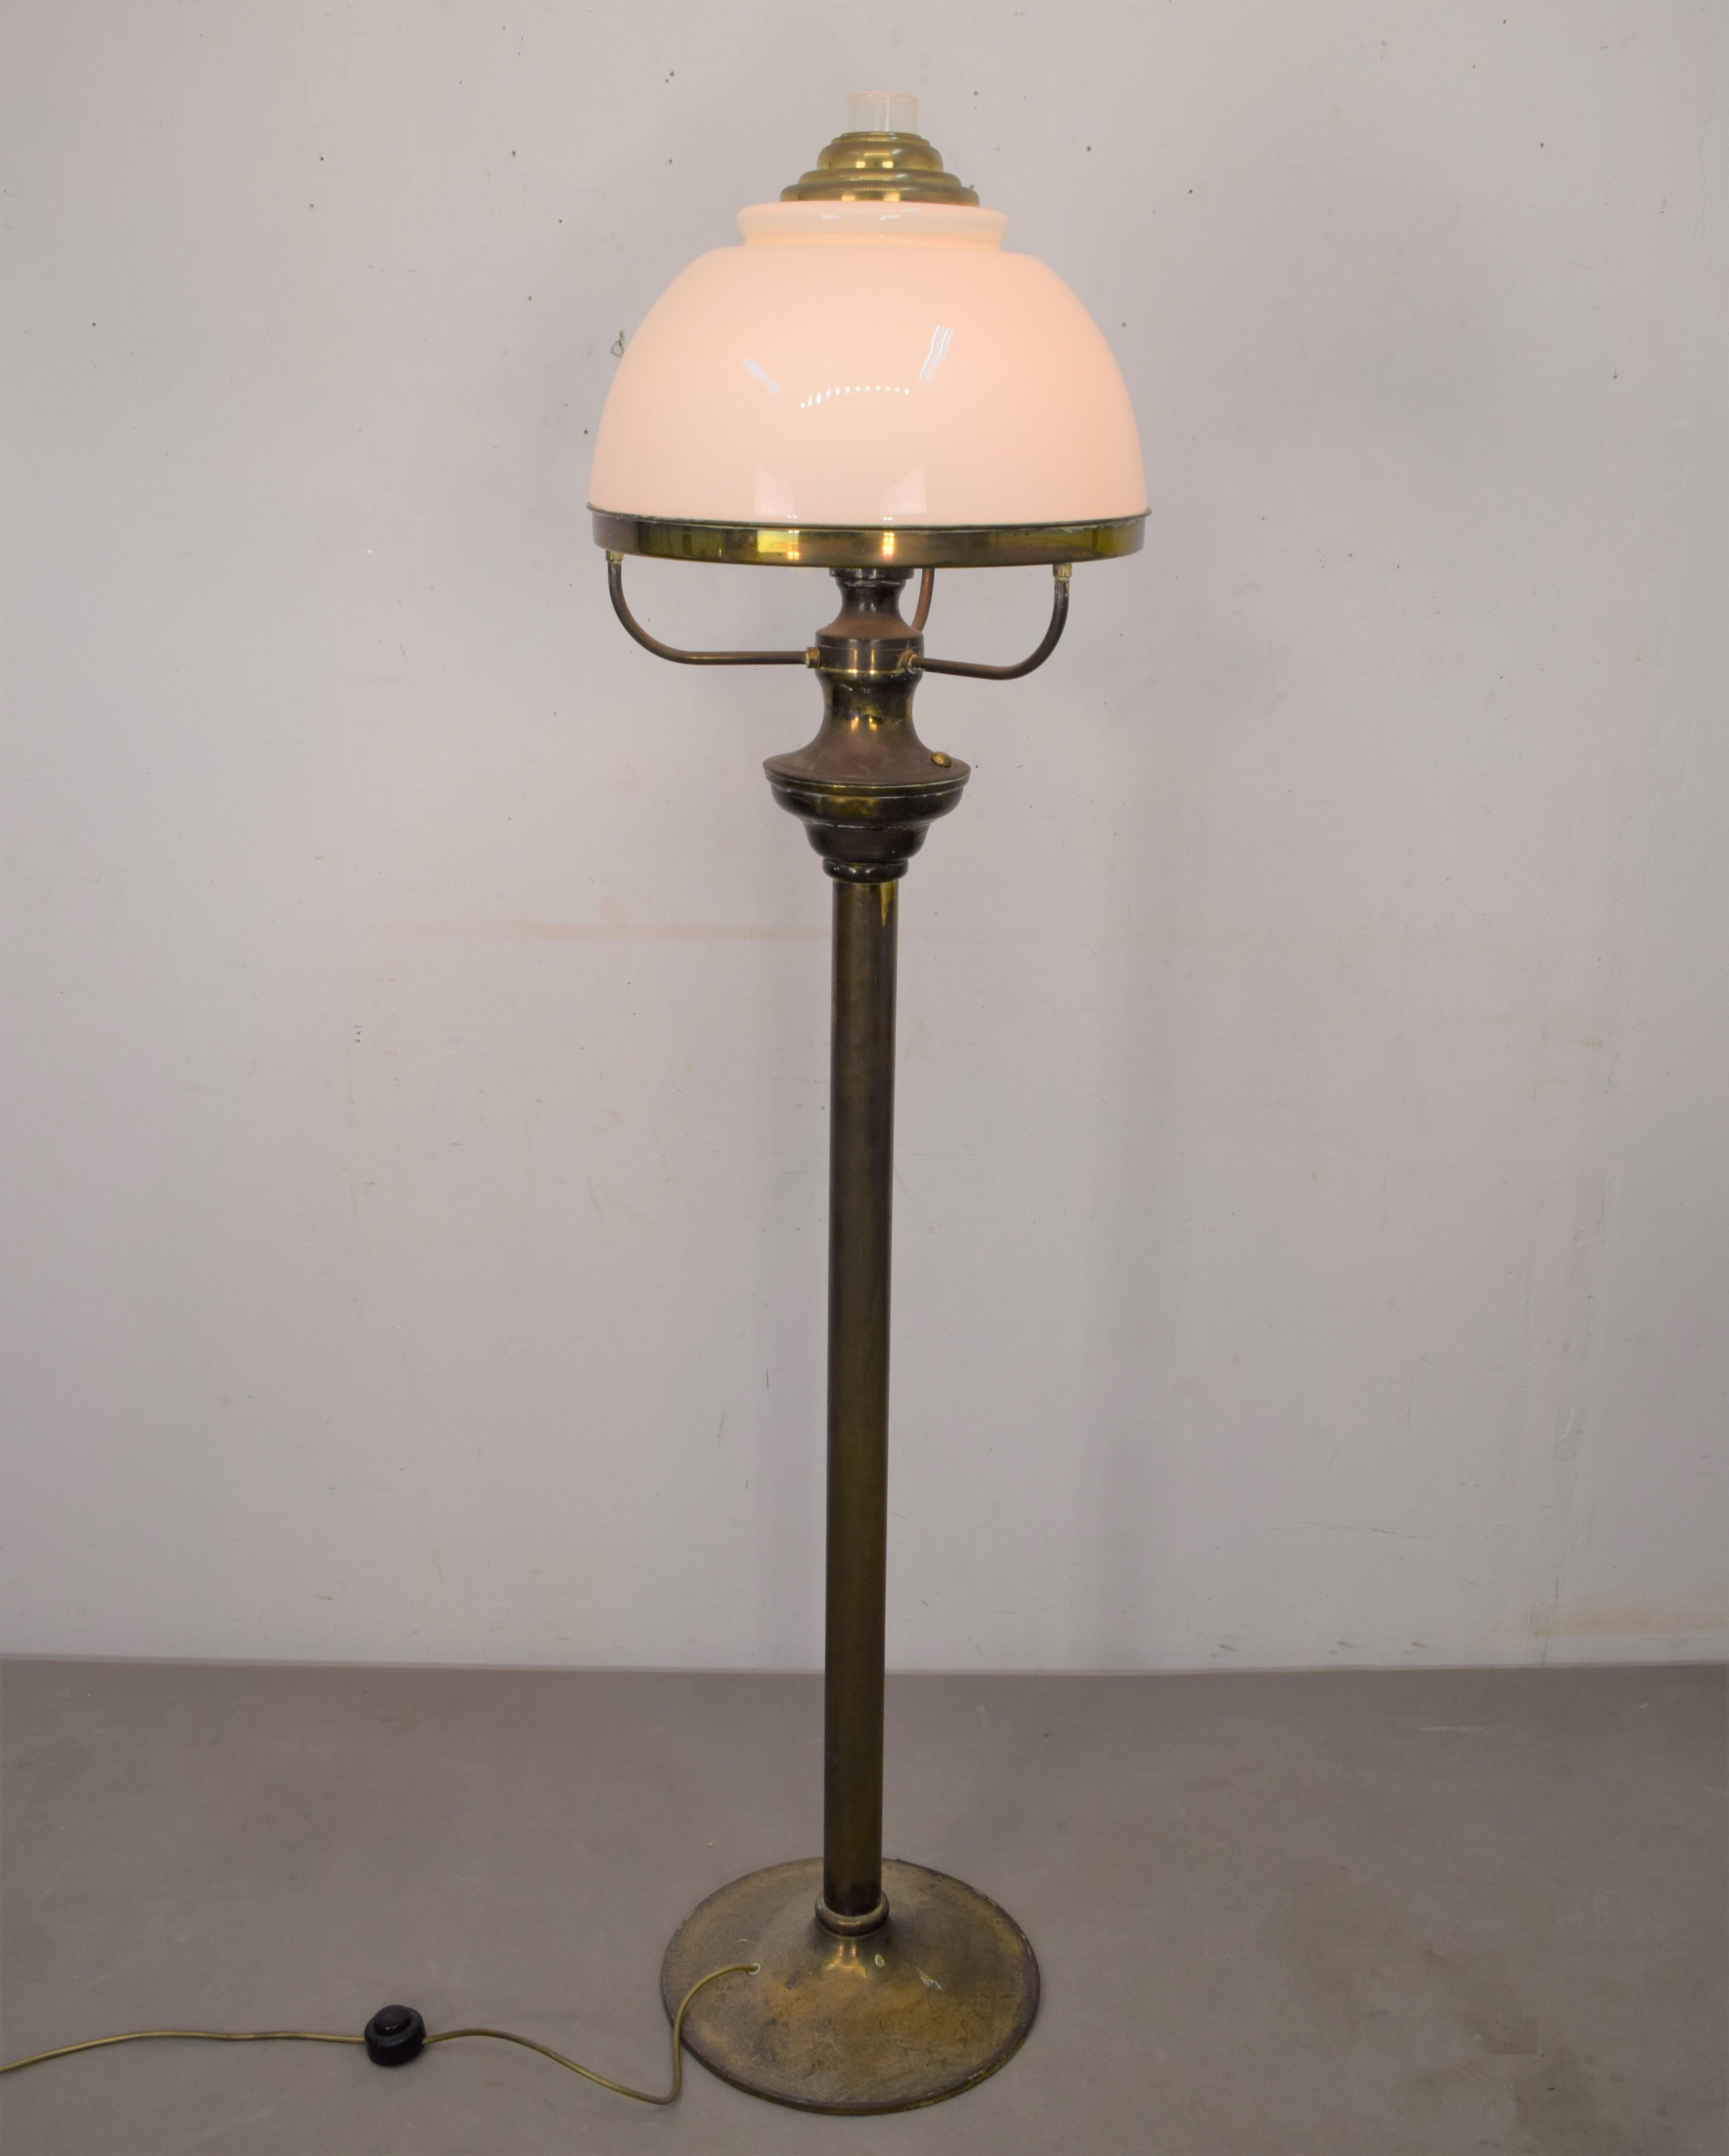 Italian floor lamp, 1950s.
Dimensions: H=155 cm; D=40 cm.